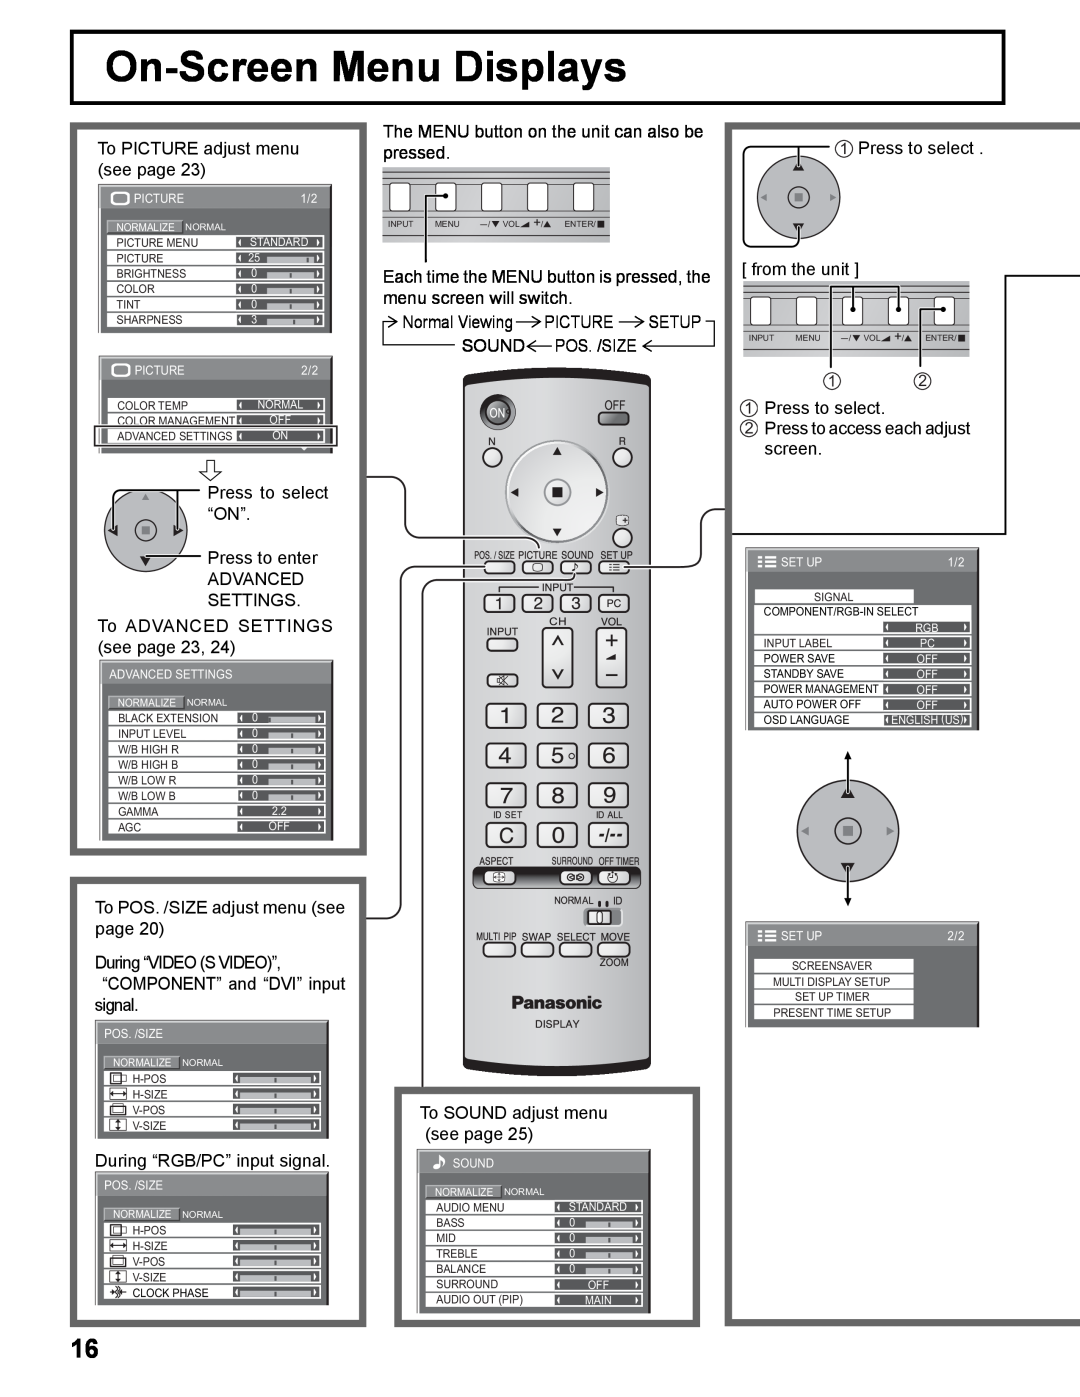 Panasonic TH-50PHD8UK, TH-37PWD8UK, TH-37PHD8UK, TH-42PWD8UK, TH-42PHD8UK manual On-Screen Menu Displays 